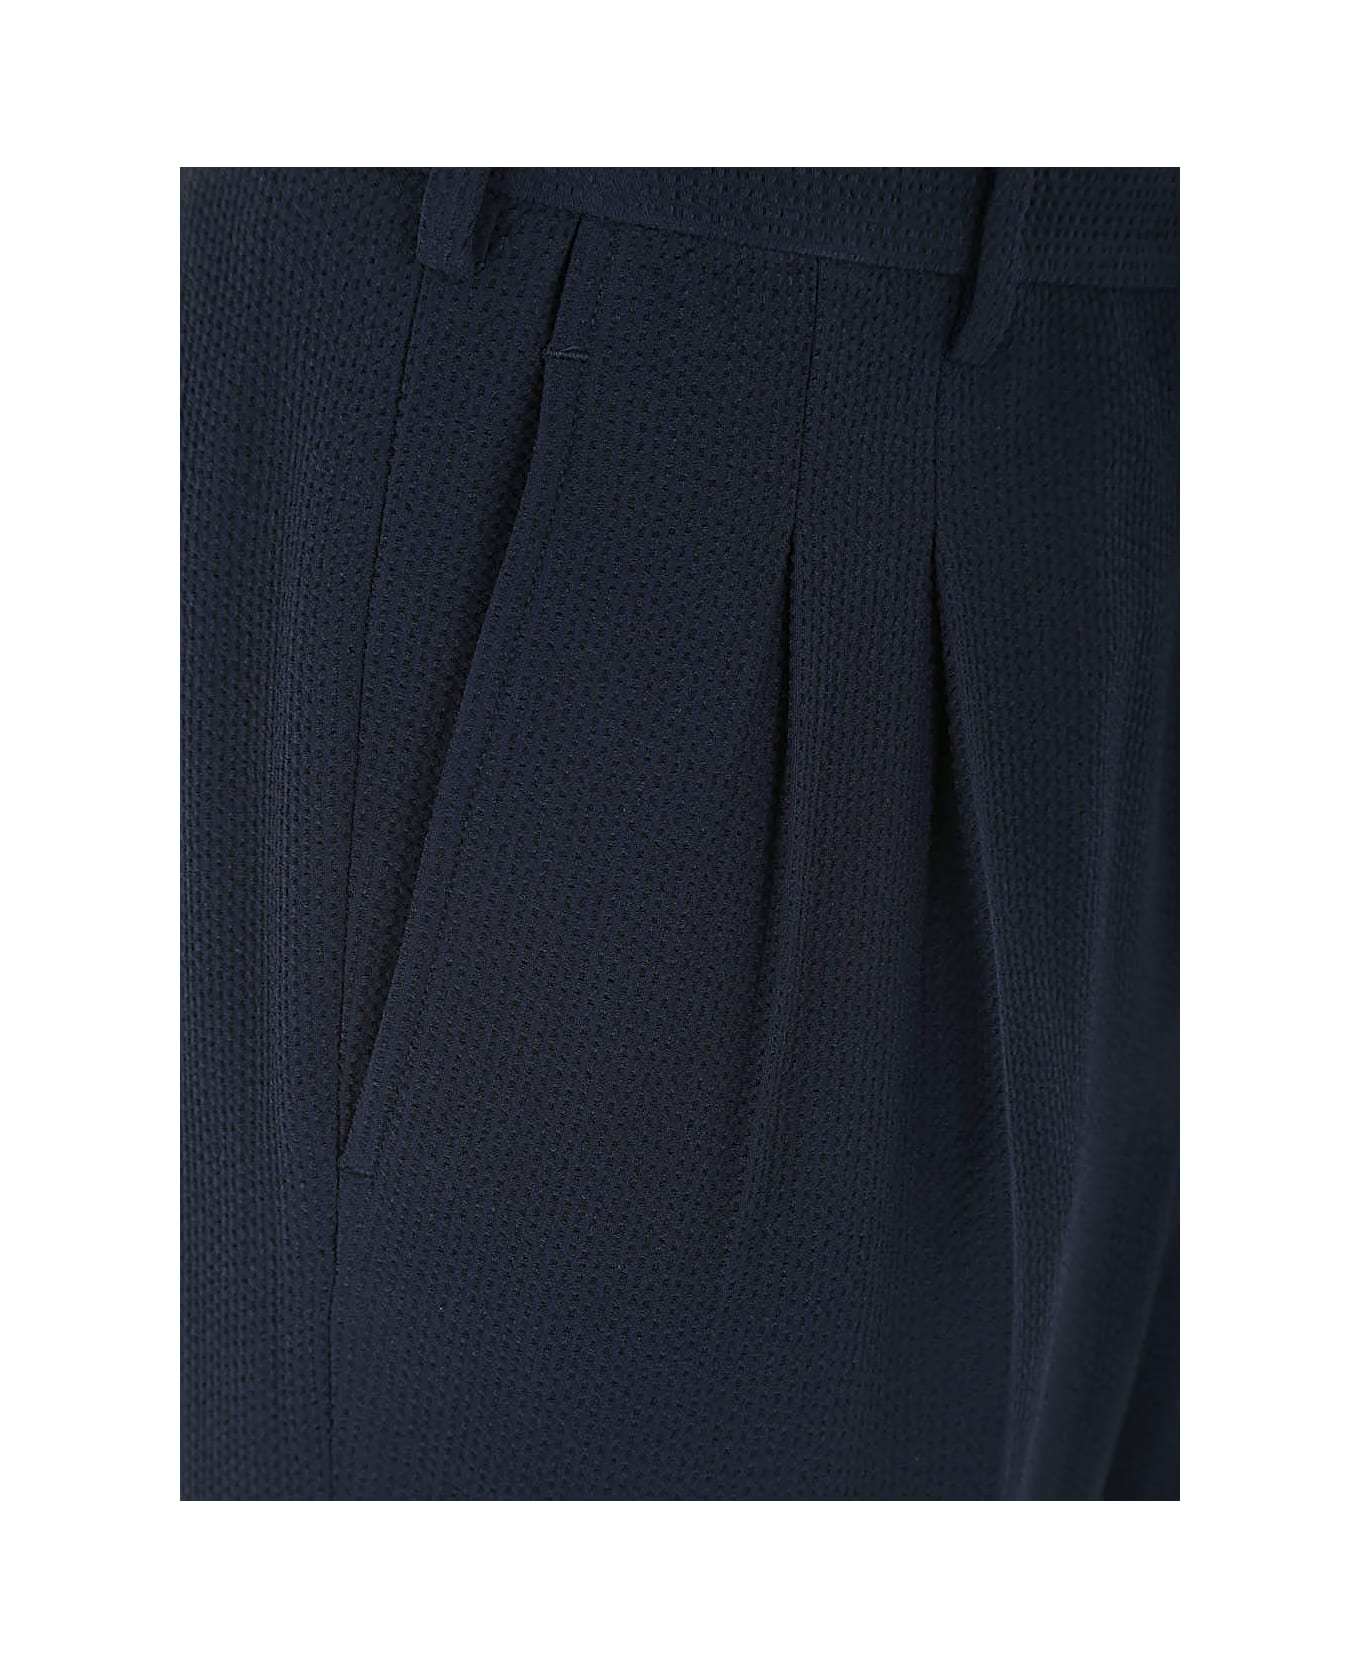 Giorgio Armani Trousers With Two Pences - Ubwf Blue